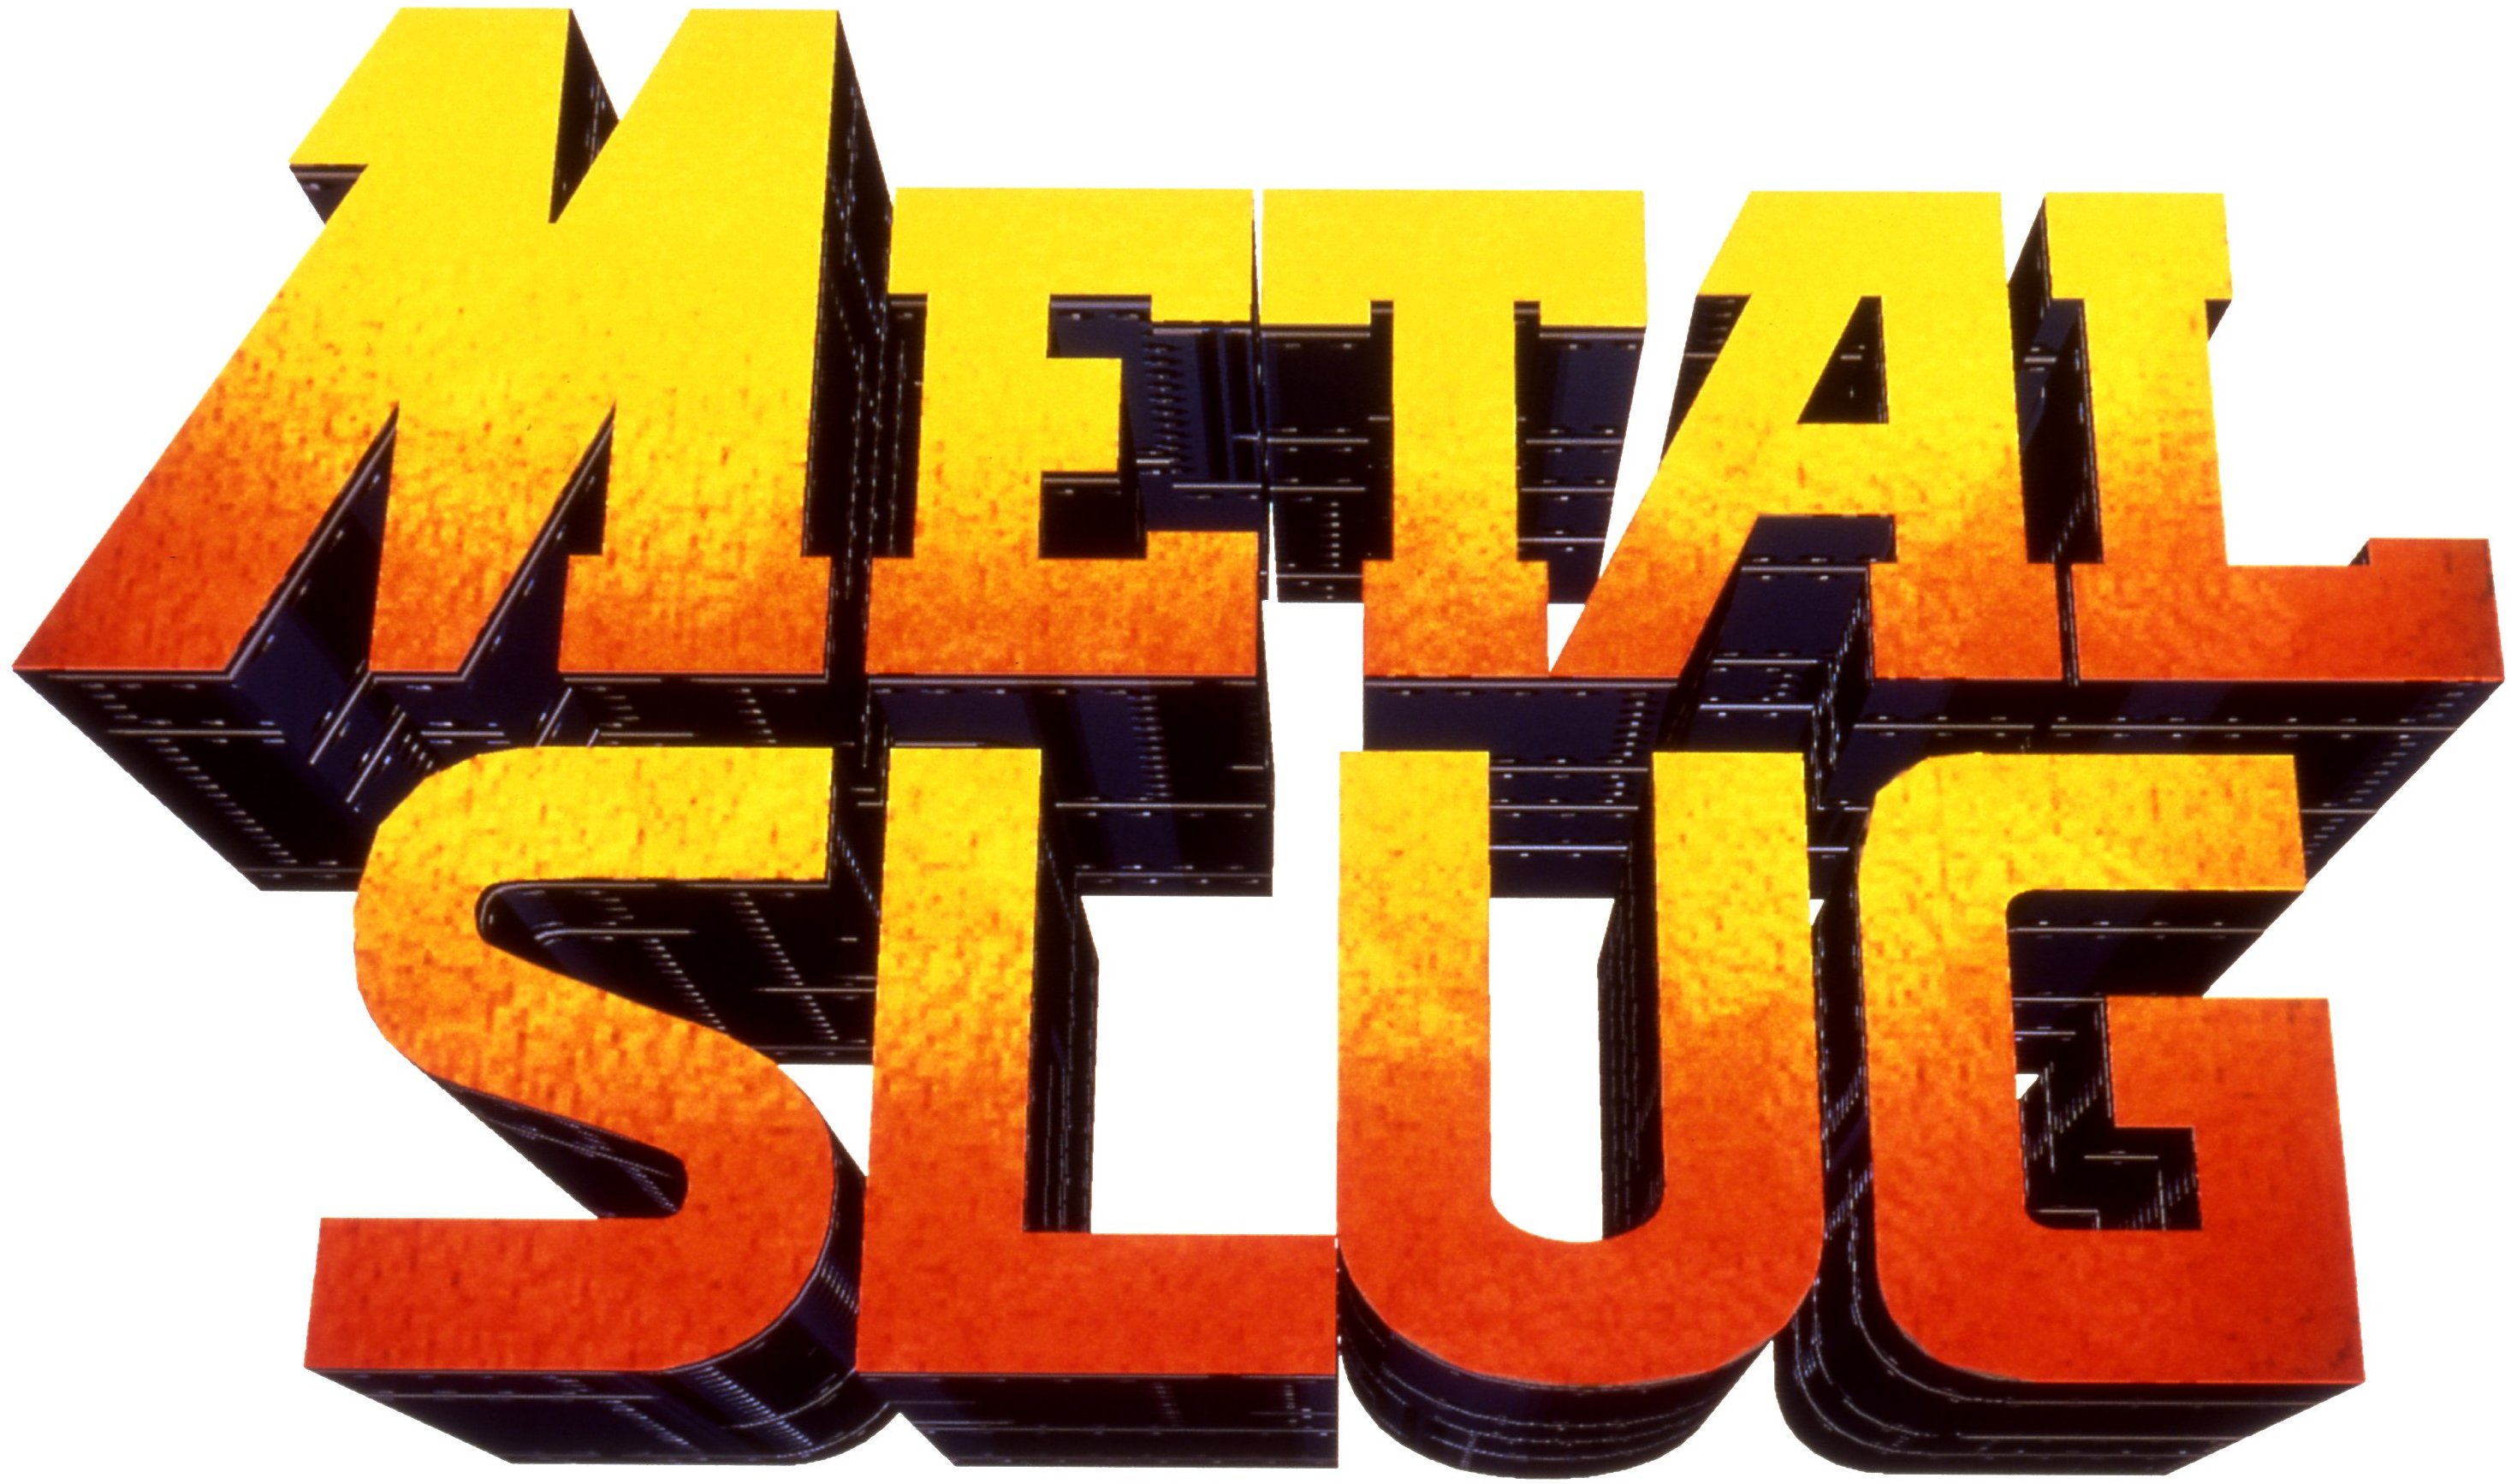 The slug logo